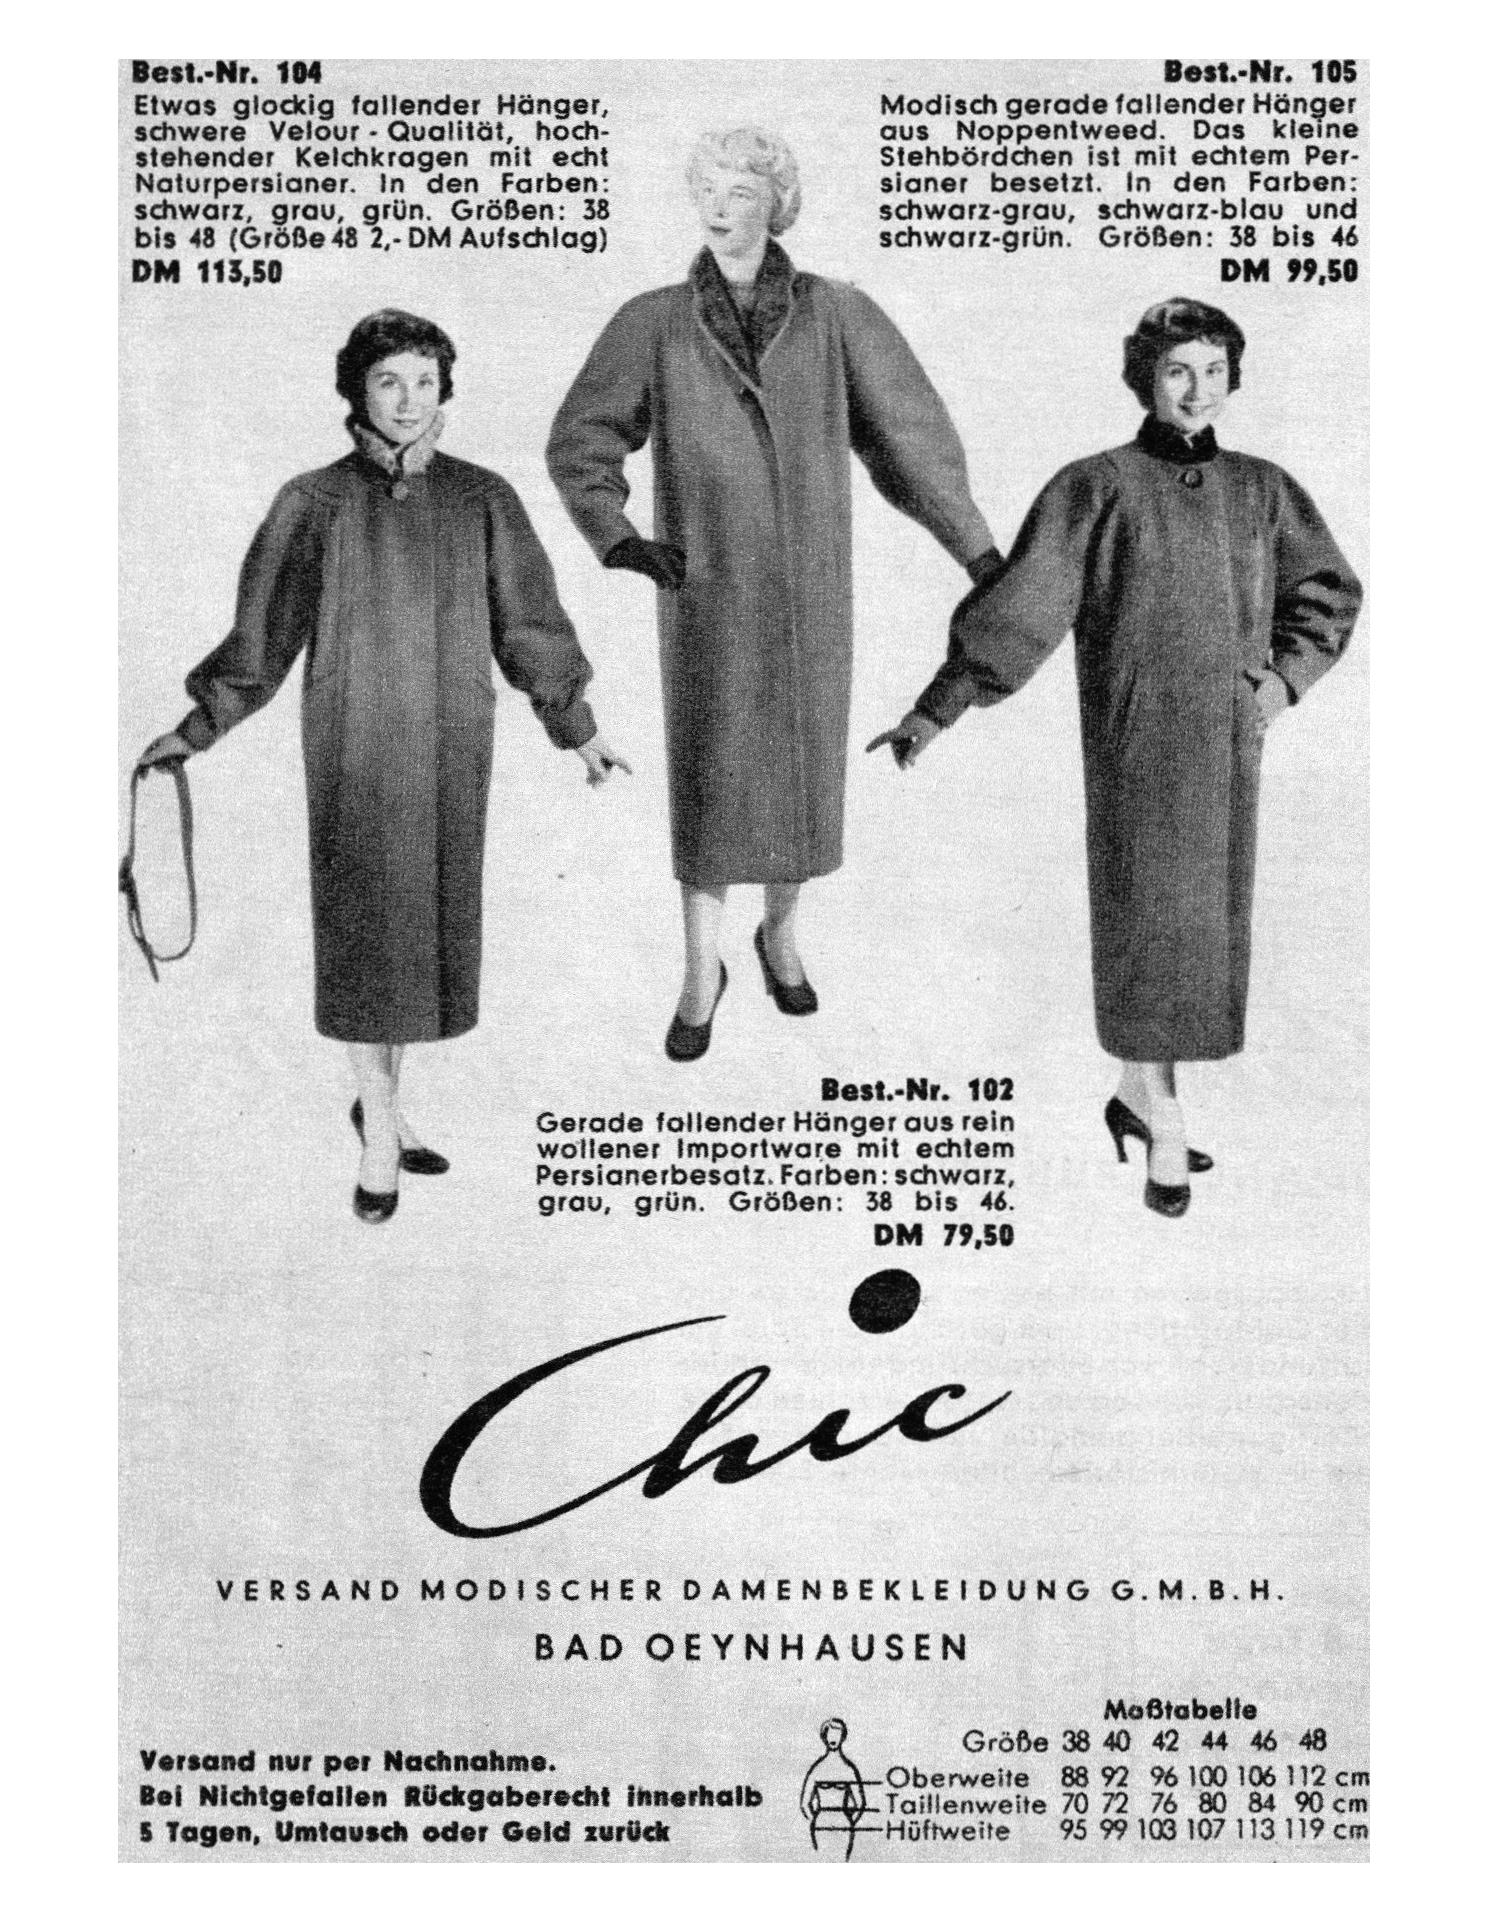 Chic Versand 1954 0.jpg